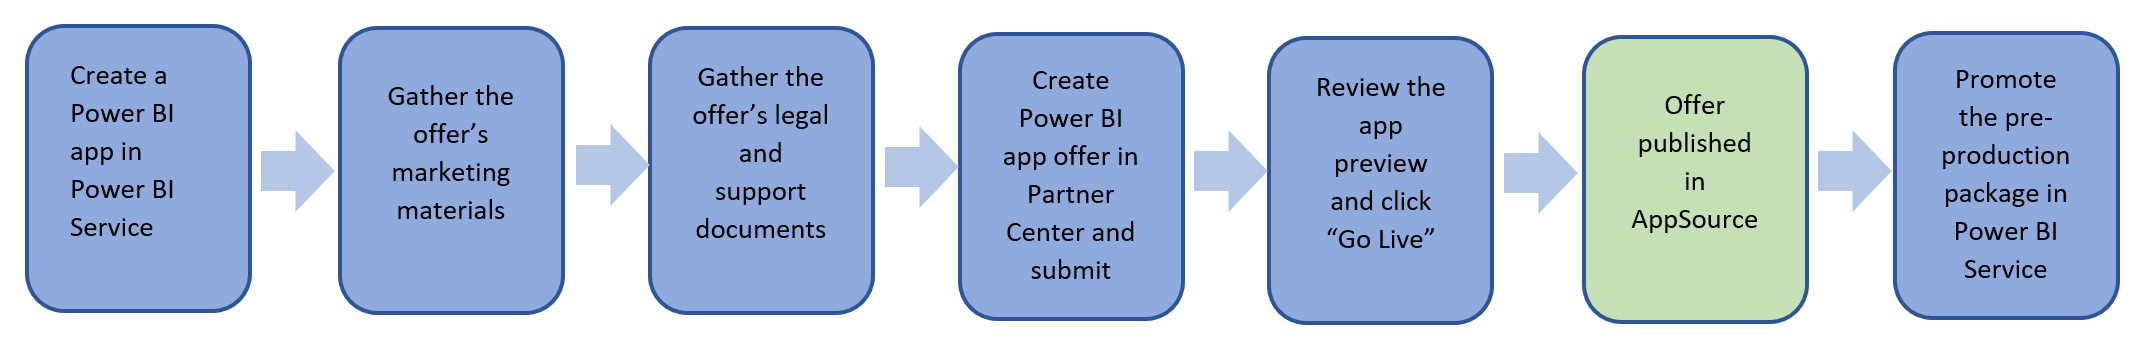 Omówienie kroków publikowania oferty aplikacji usługi Power BI.